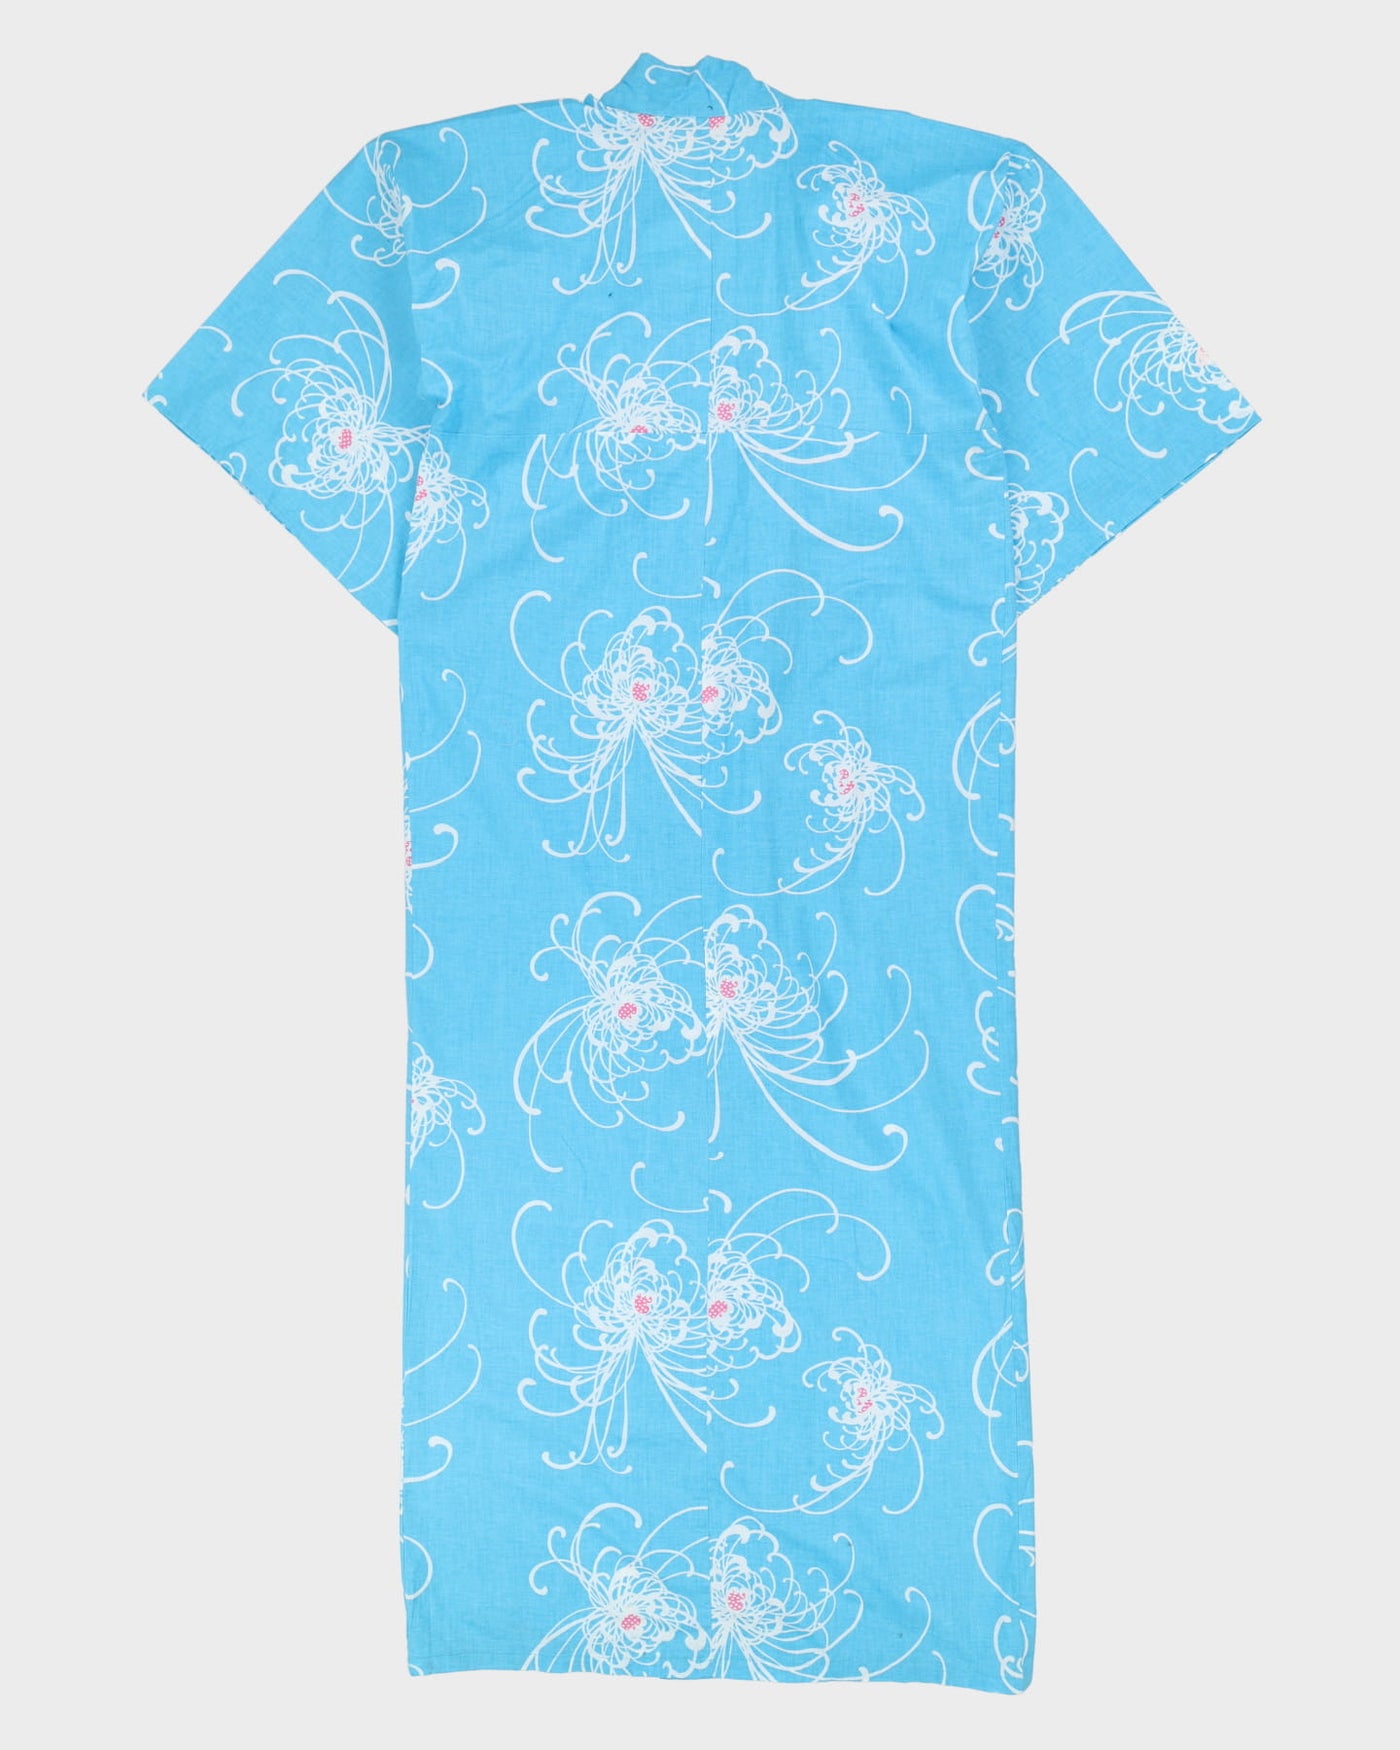 Blue Patterned Yukata Summer Kimono - M / L